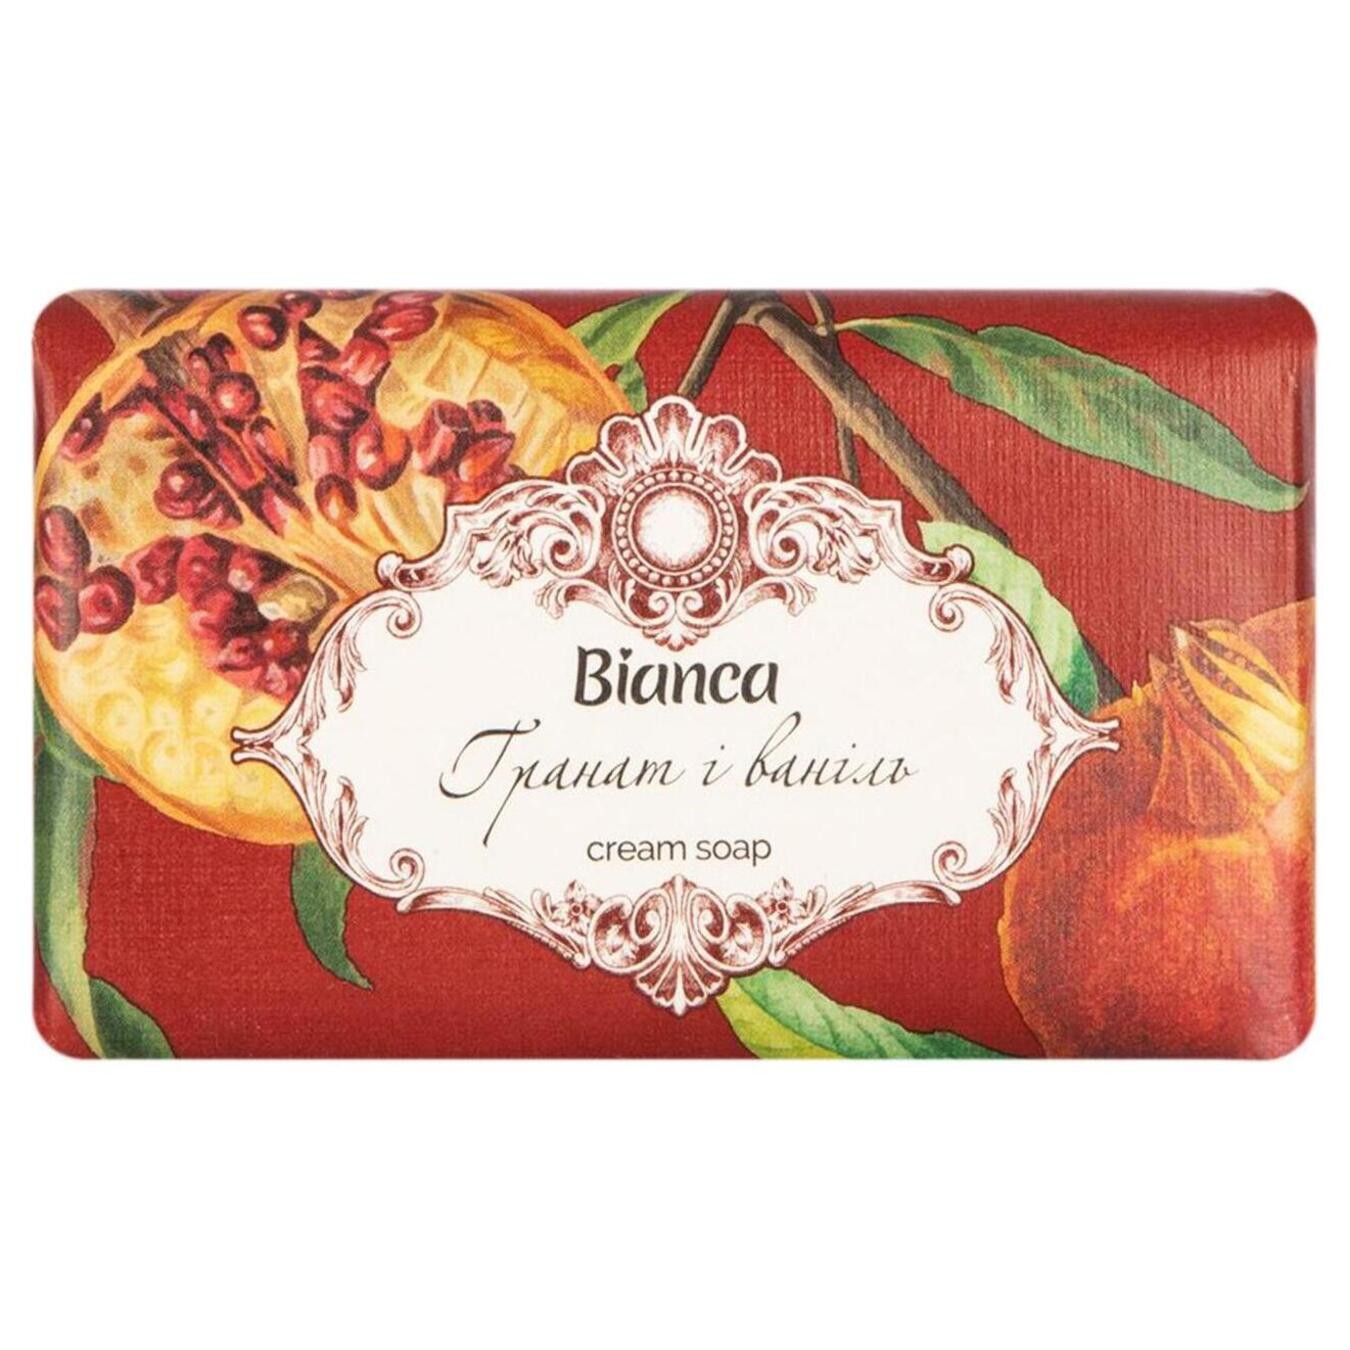 Крем-мыло Bianca косметическое гранат и ваниль 200г